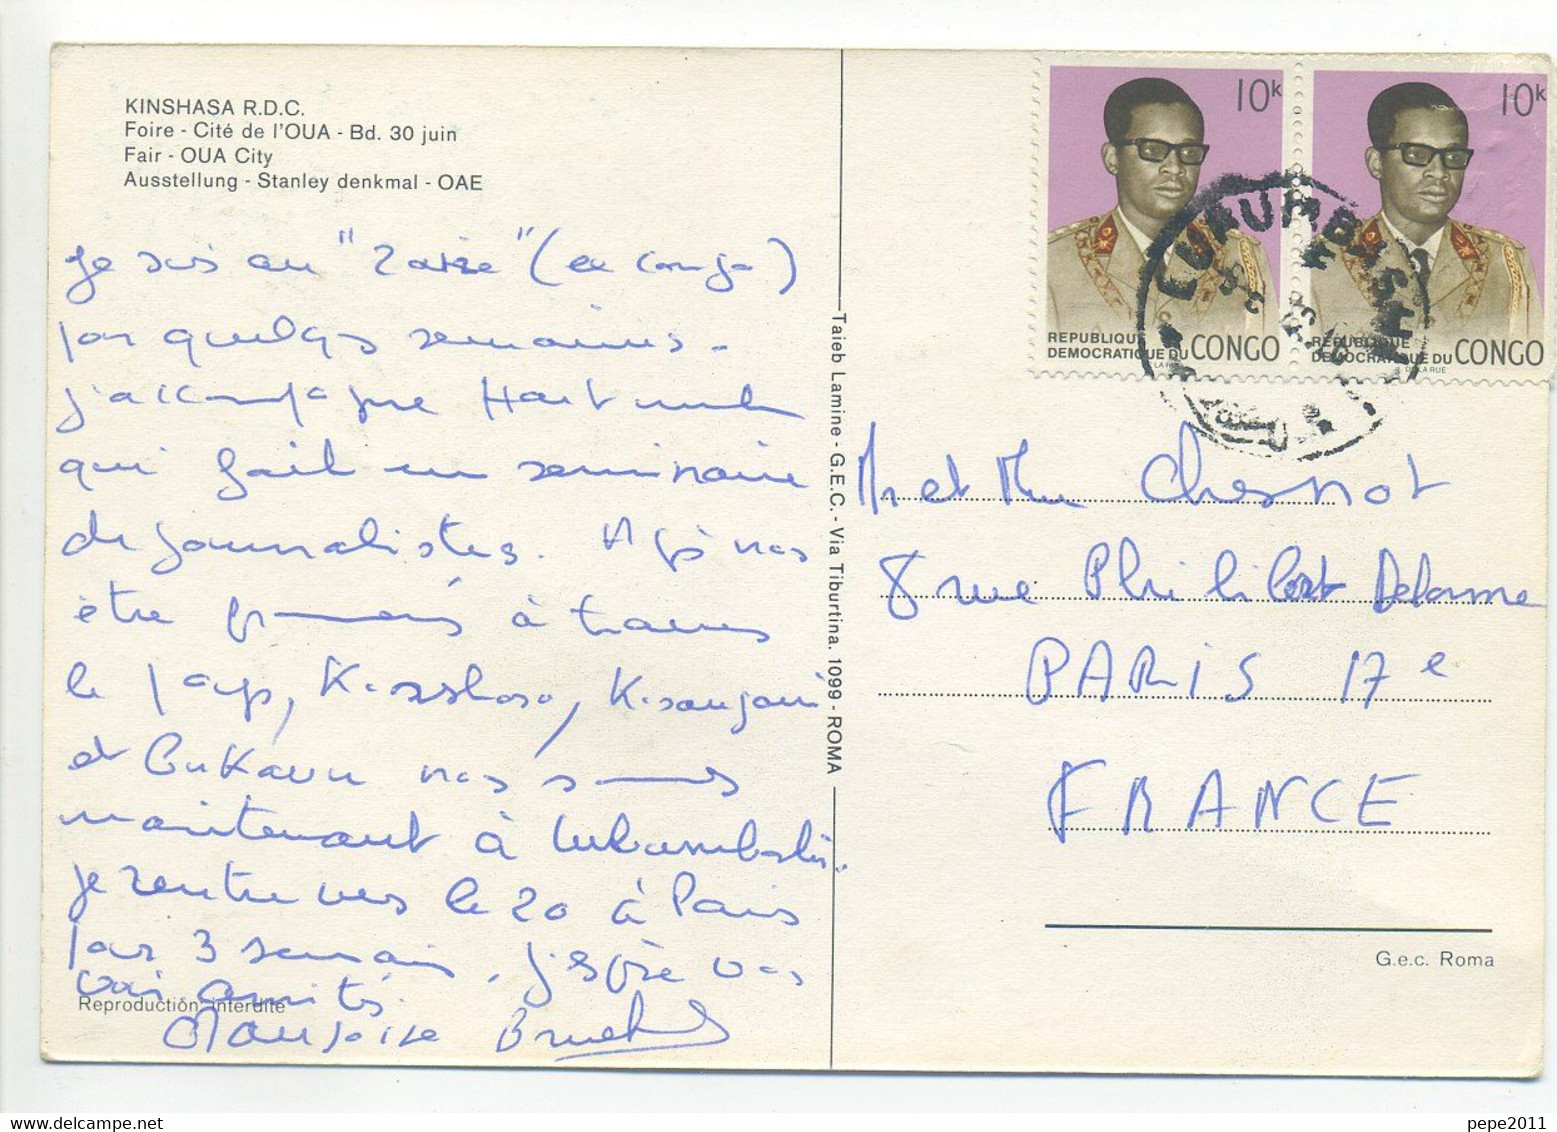 CPSM Multivues - Congo - Souvenir De Kinshasa (ex Zaire) - R.D.C. - Foire, Cité De L'OUA - Bd 30 Juin - Kinshasa - Leopoldville